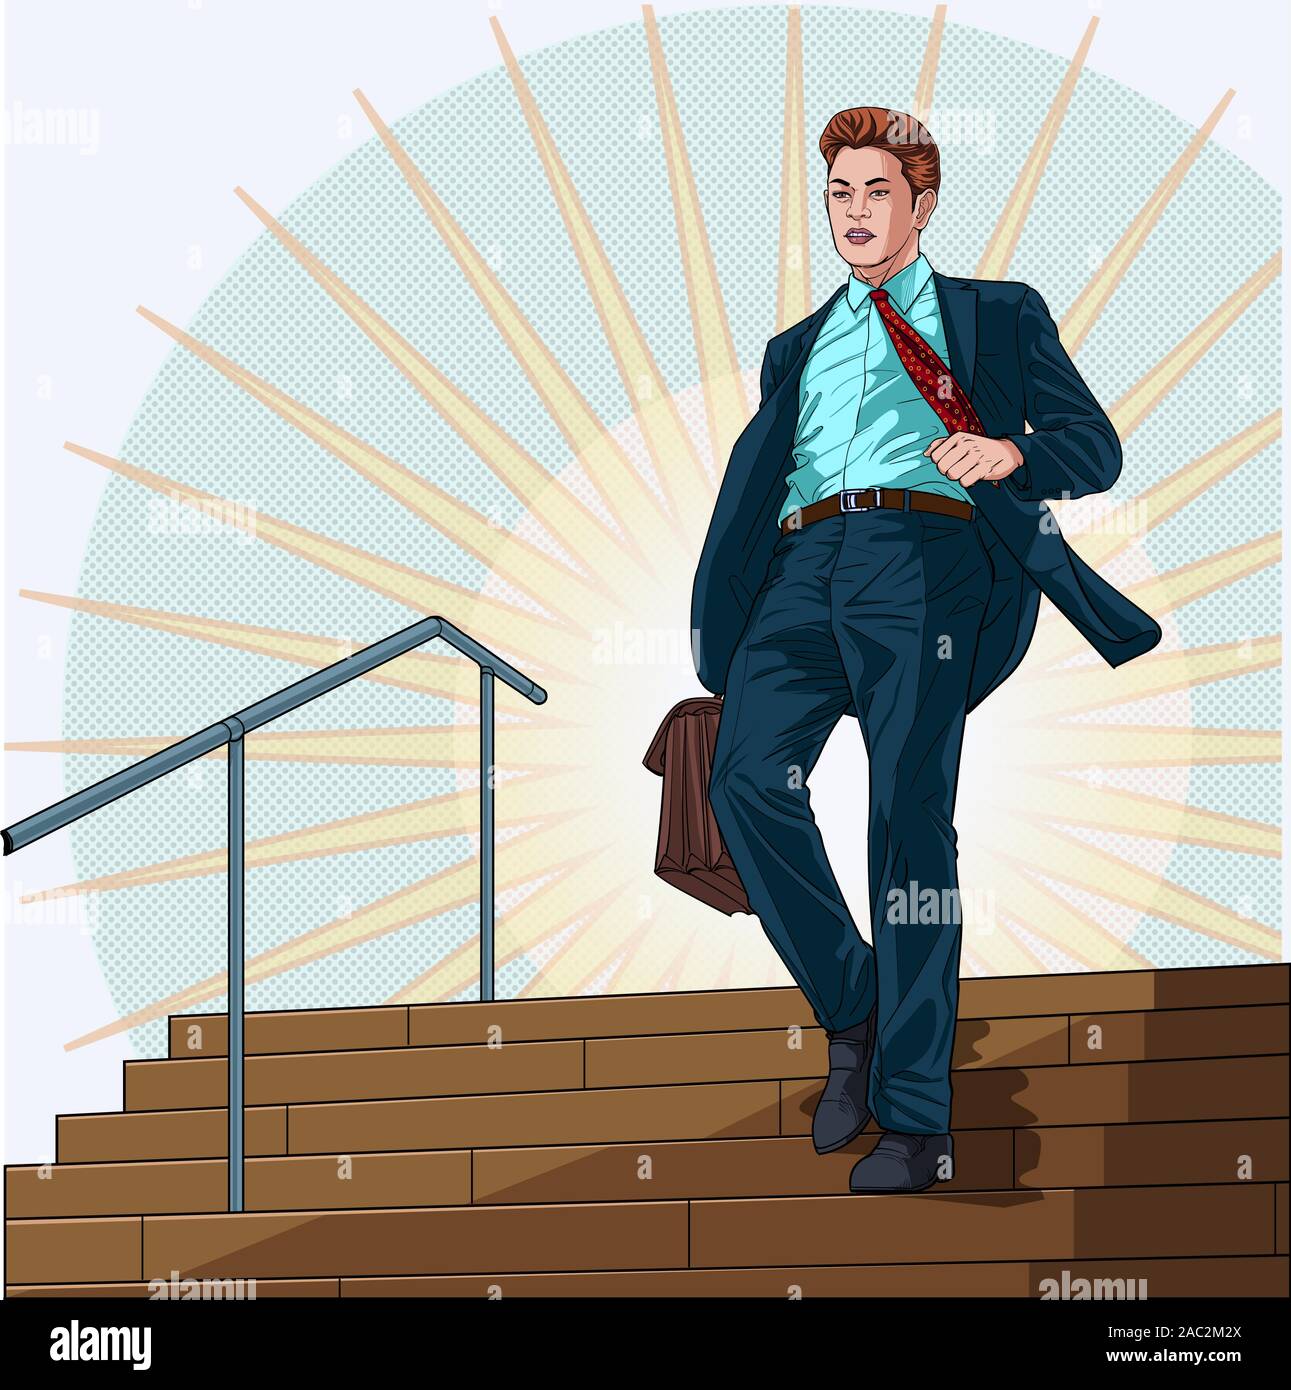 Un homme marche dans les escaliers après le travail de l'entreprise Illustration vector sur le pop art style bd fond abstrait Illustration de Vecteur